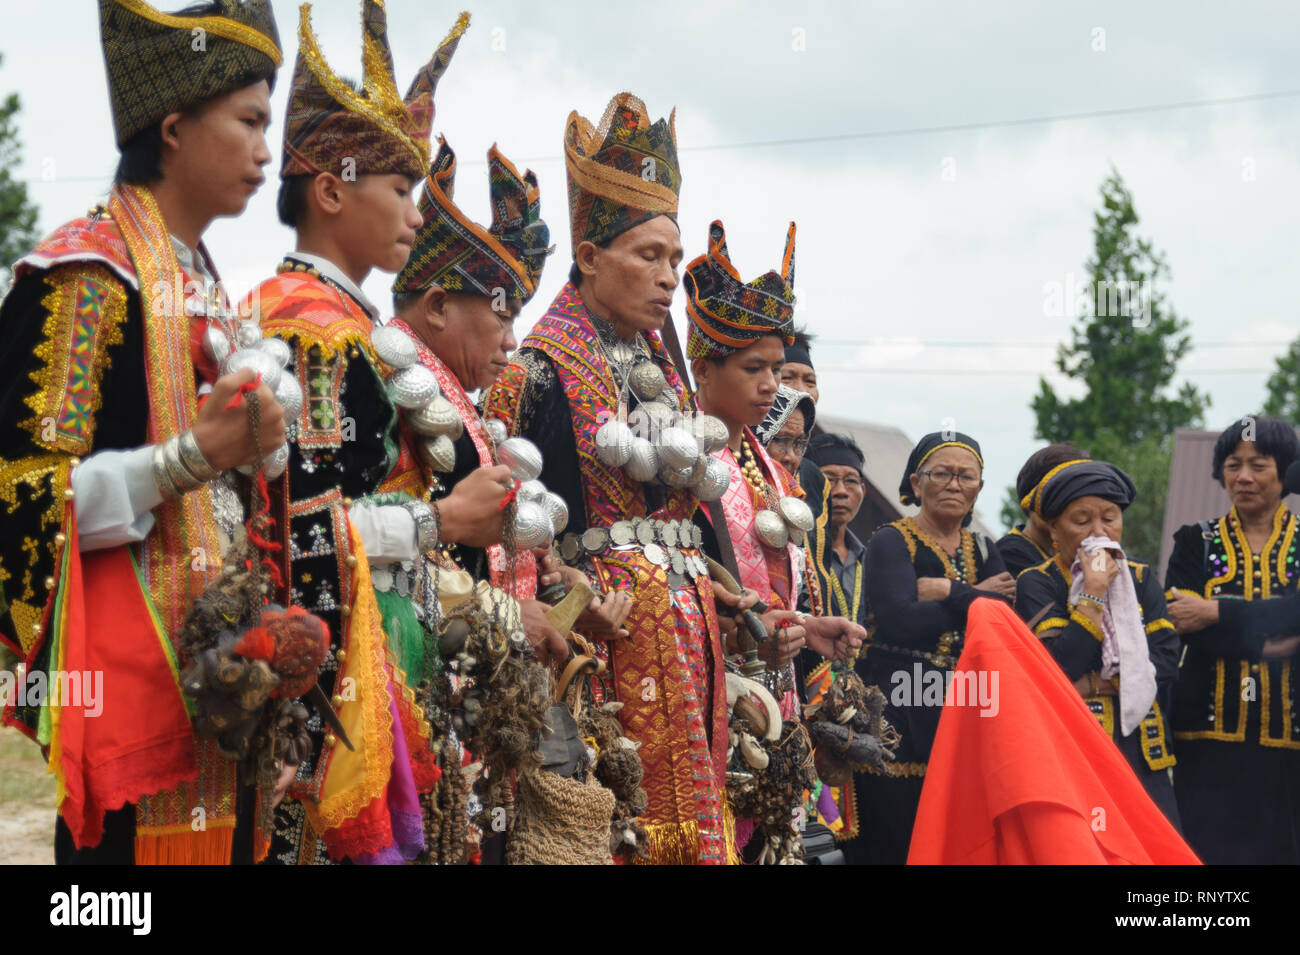 Kundasang Sabah, Malaysia - Apr 3, 2015: Dusun ethnischen Schamane Vollführung ritueller der Geist des Akinabalu Hüter des Mount Kinabalu zu beschwichtigen. Stockfoto